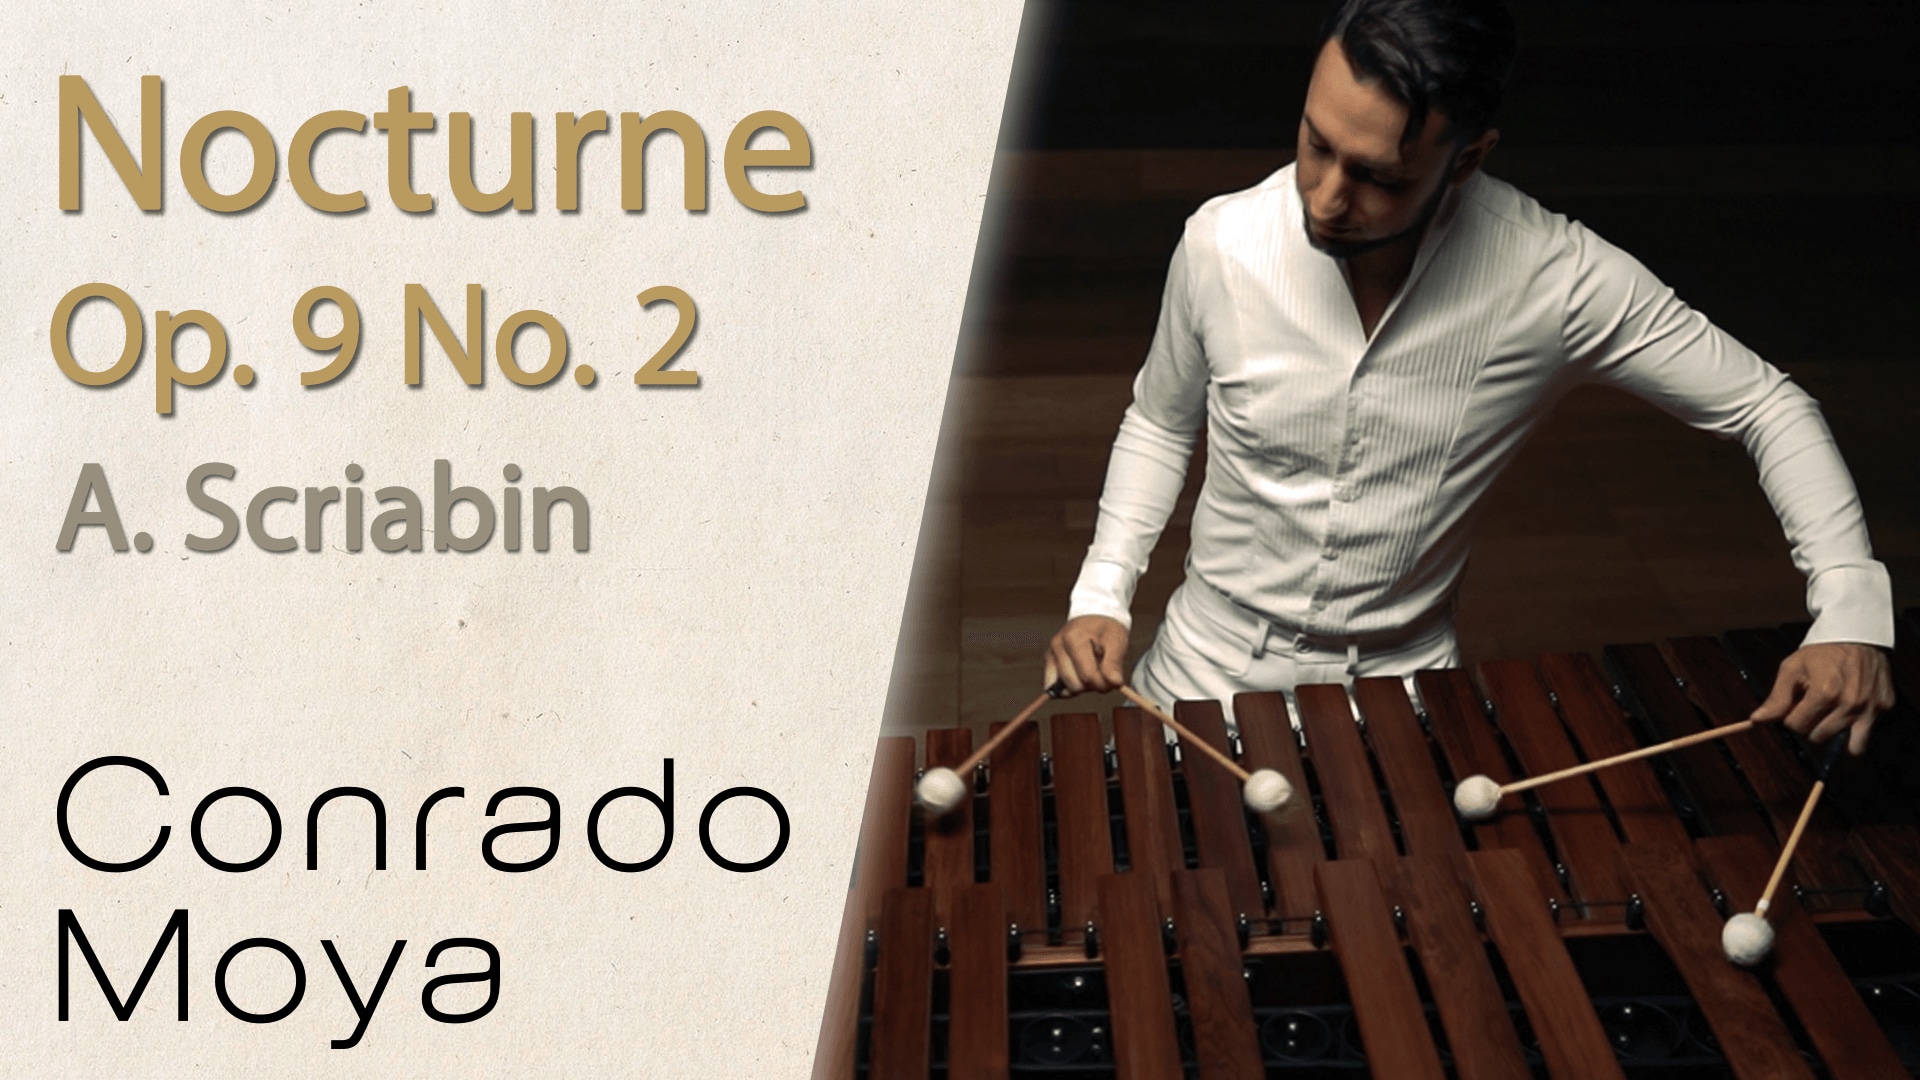 Nocturne Op.9 No.2 - A. Scriabin